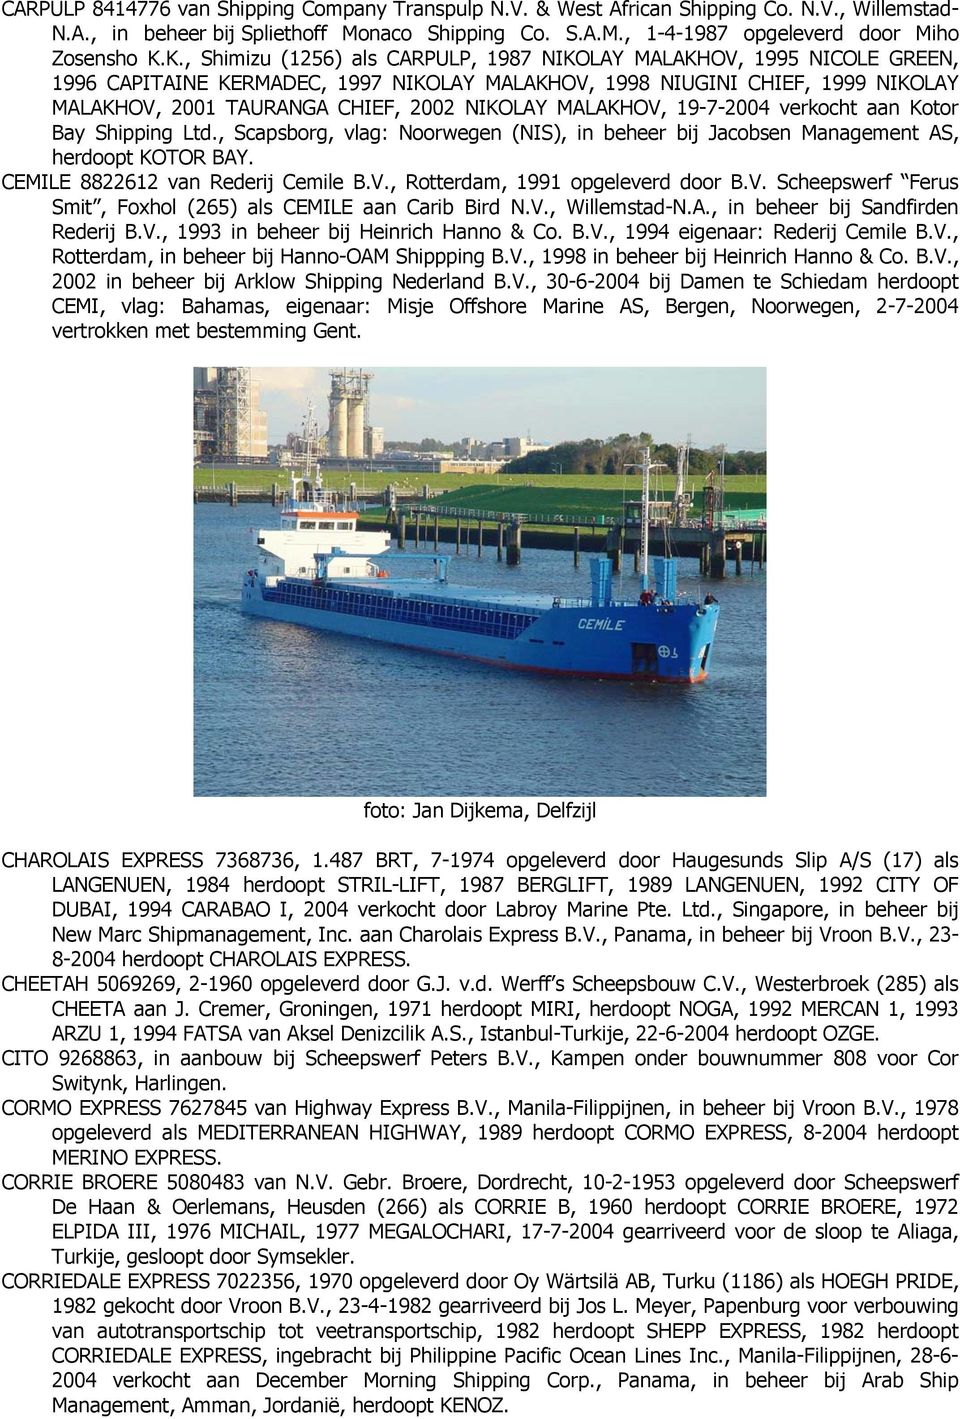 MALAKHOV, 19-7-2004 verkocht aan Kotor Bay Shipping Ltd., Scapsborg, vlag: Noorwegen (NIS), in beheer bij Jacobsen Management AS, herdoopt KOTOR BAY. CEMILE 8822612 van Rederij Cemile B.V., Rotterdam, 1991 opgeleverd door B.